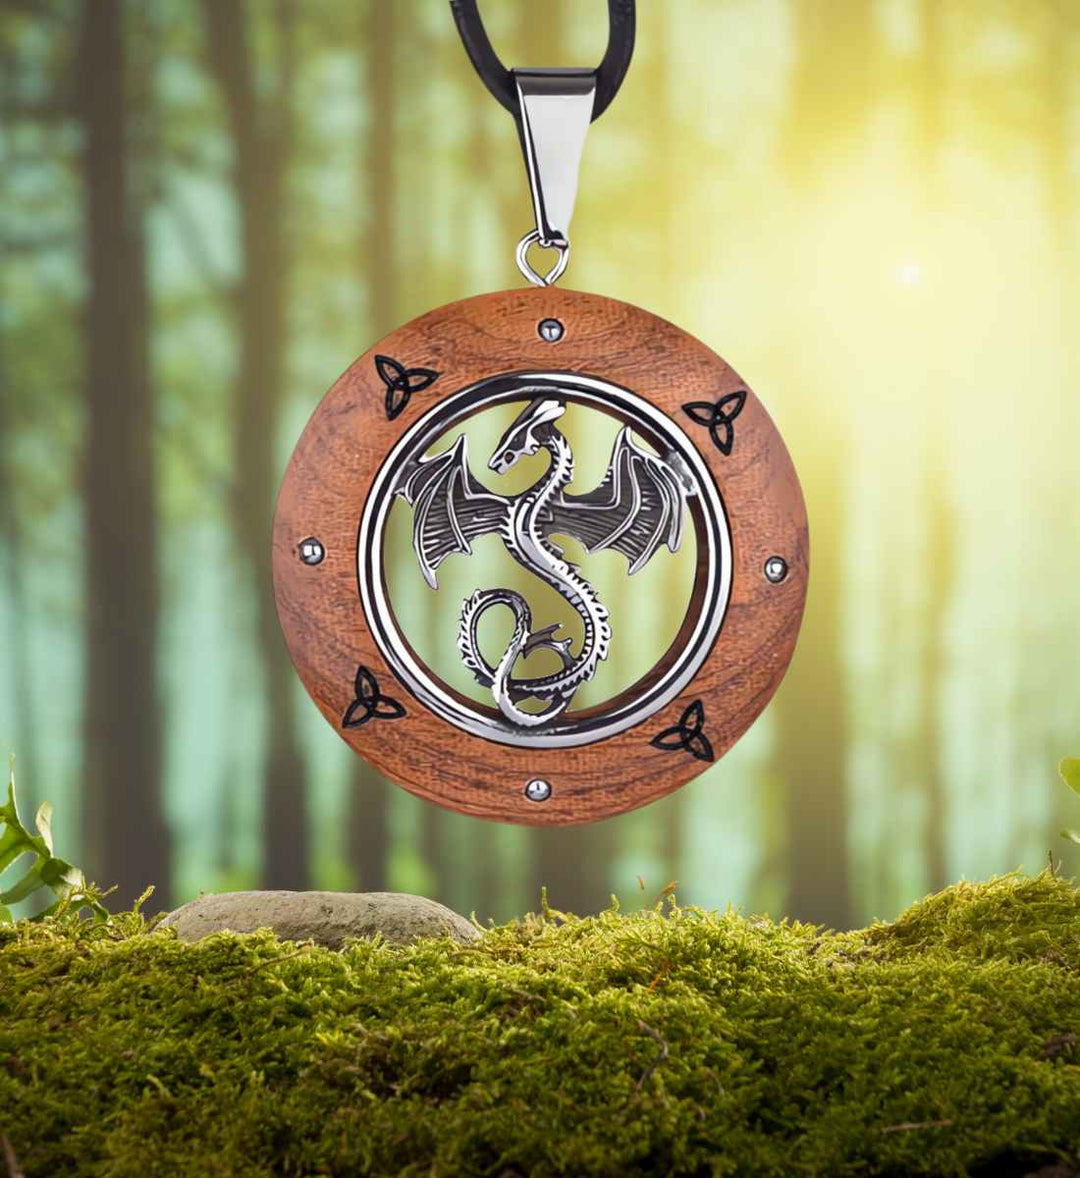 Wyvern of the Ancient Celts Anhänger auf Moos im Wald – mystischer keltischer Schmuck in natürlicher Umgebung.